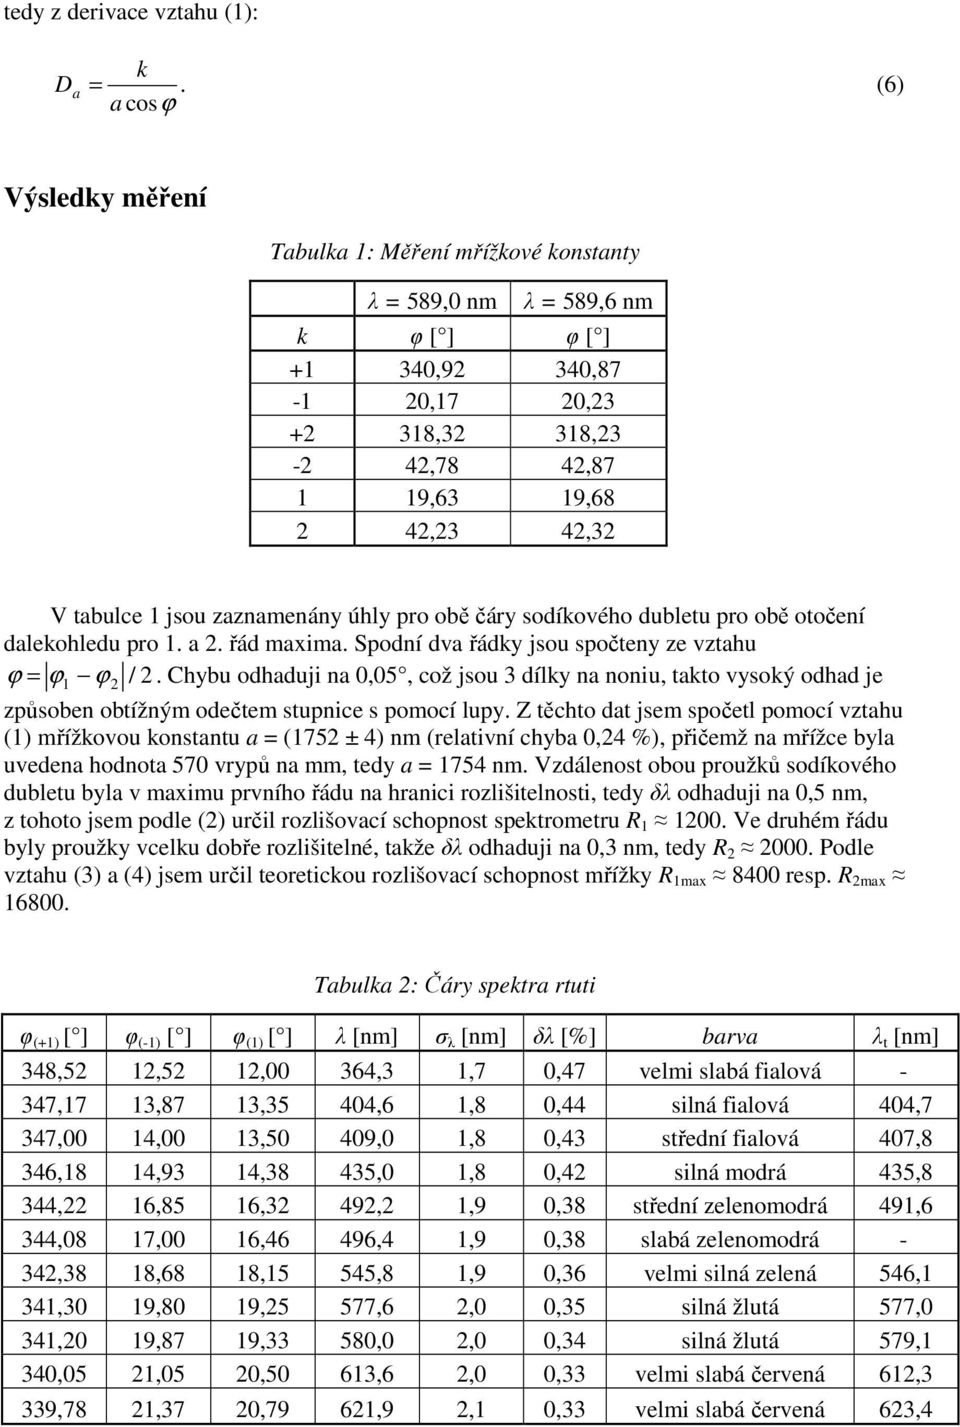 tabulce 1 jsou zaznamenány úhly pro obě čáry sodíkového dubletu pro obě otočení dalekohledu pro 1. a 2. řád maxima. Spodní dva řádky jsou spočteny ze vztahu ϕ = ϕ 1 ϕ 2 / 2.